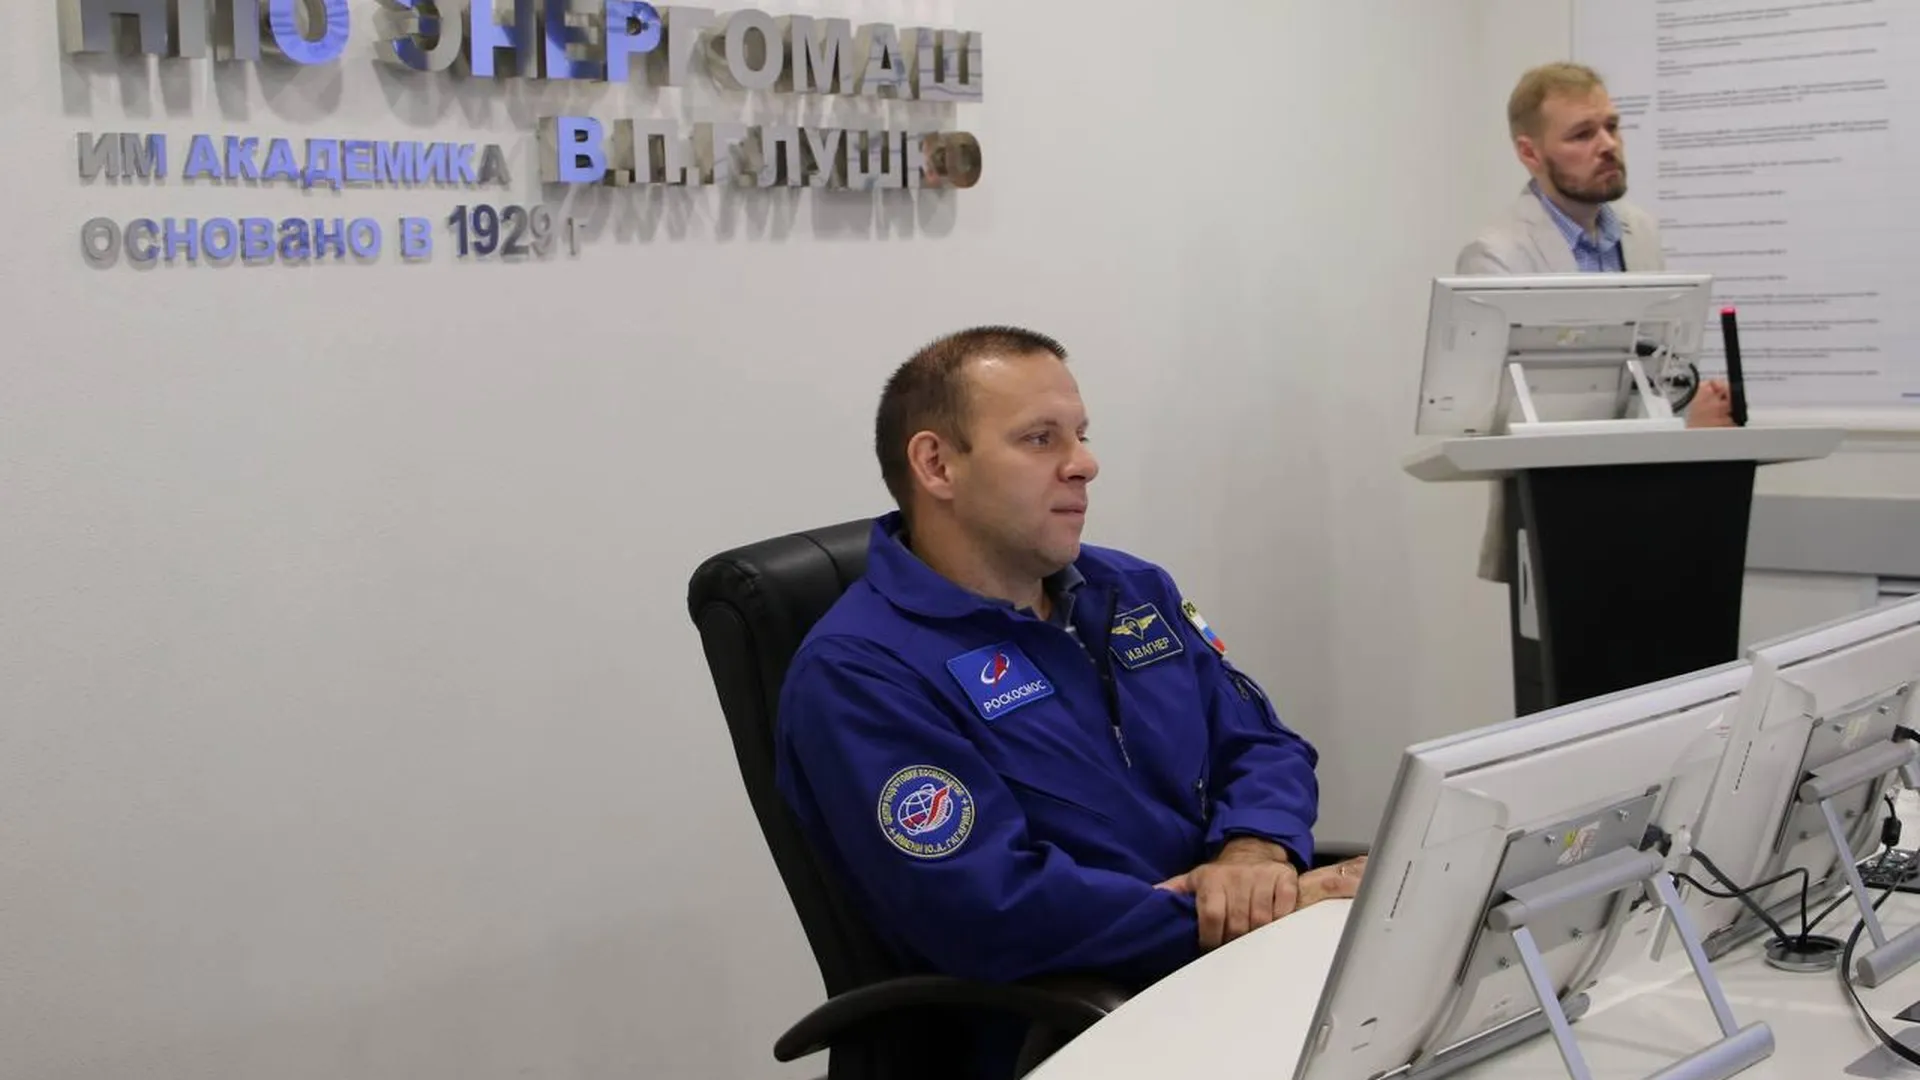 Космонавт Иван Вагнер рассказал о тренировках и испытаниях сотрудникам НПО «Энергомаш» в Химках